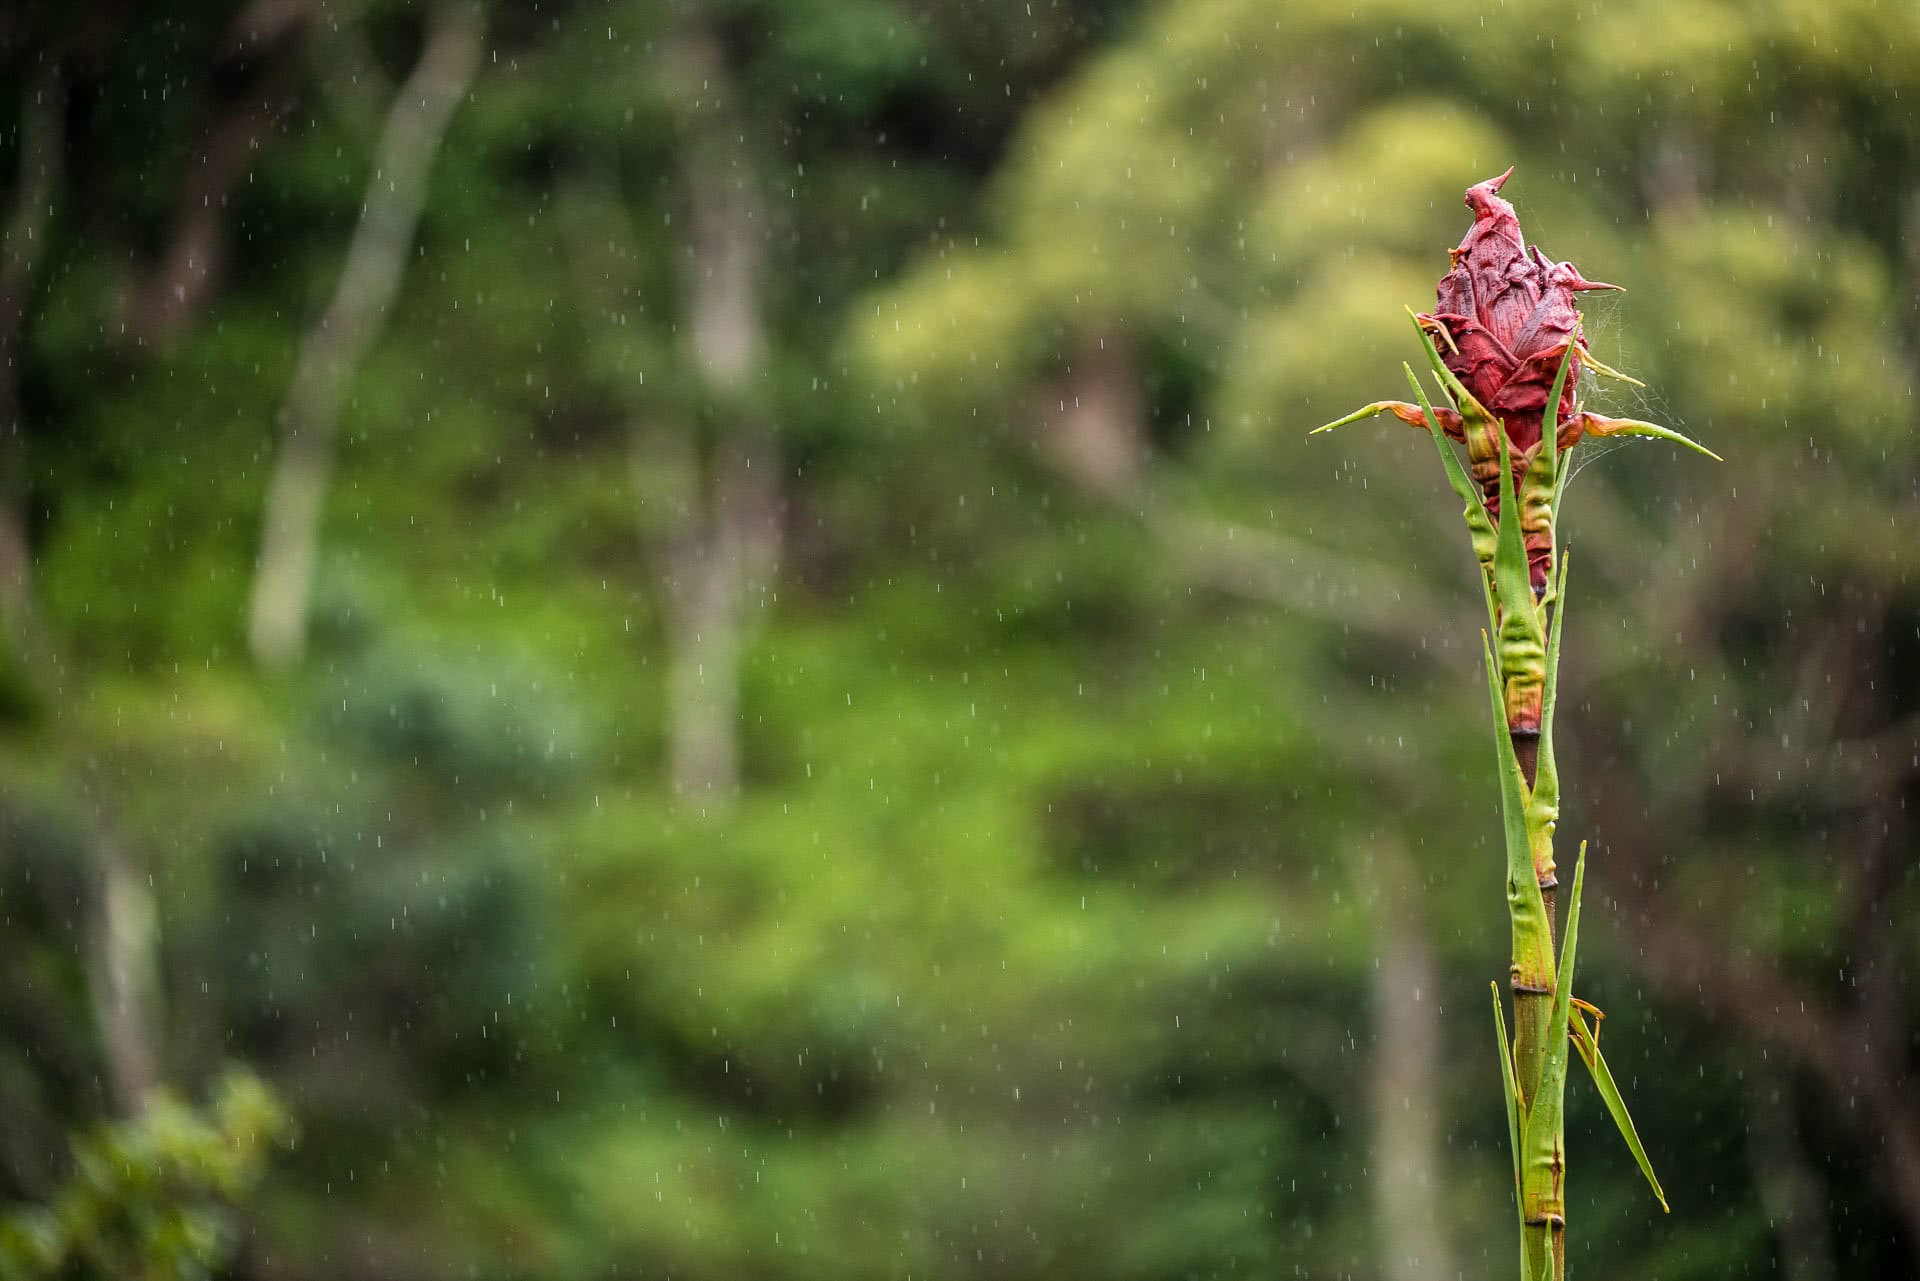 Wild Sydney – A Photo Essay, photo by Chris Firth, Sydney, NSW, rainshower, flower